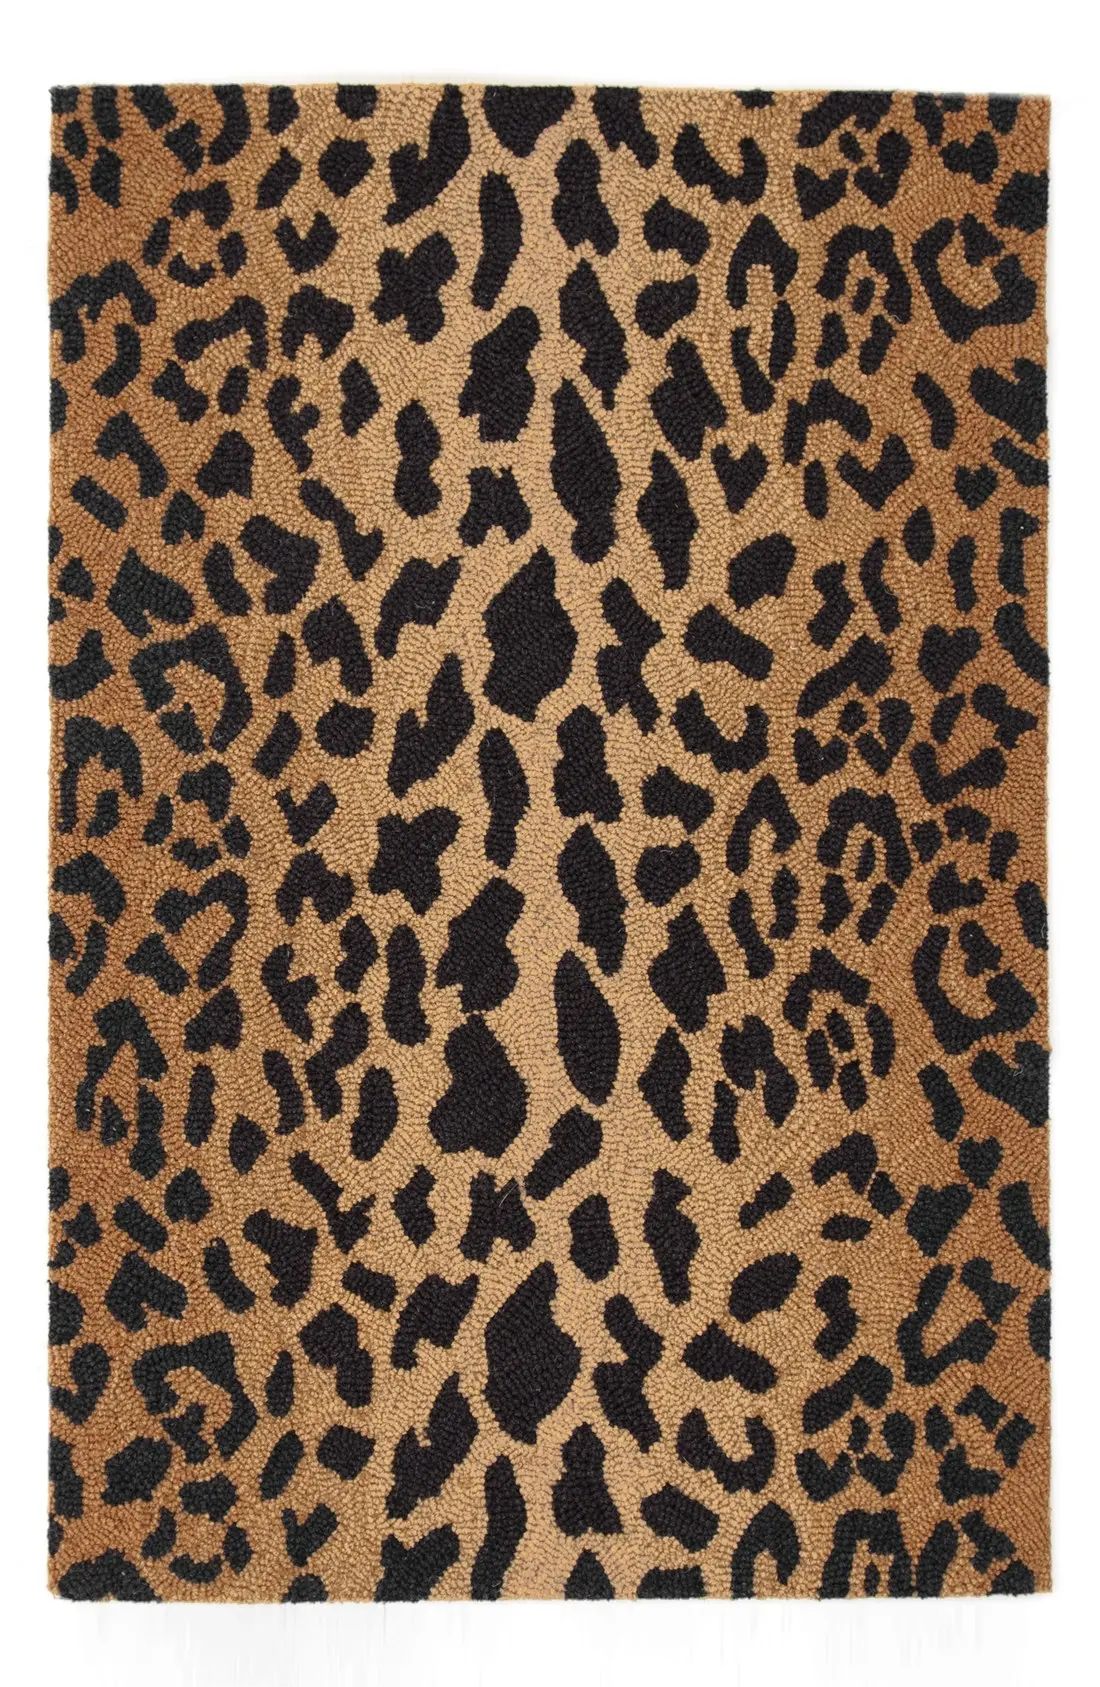 Leopard Print Wool Rug | Nordstrom